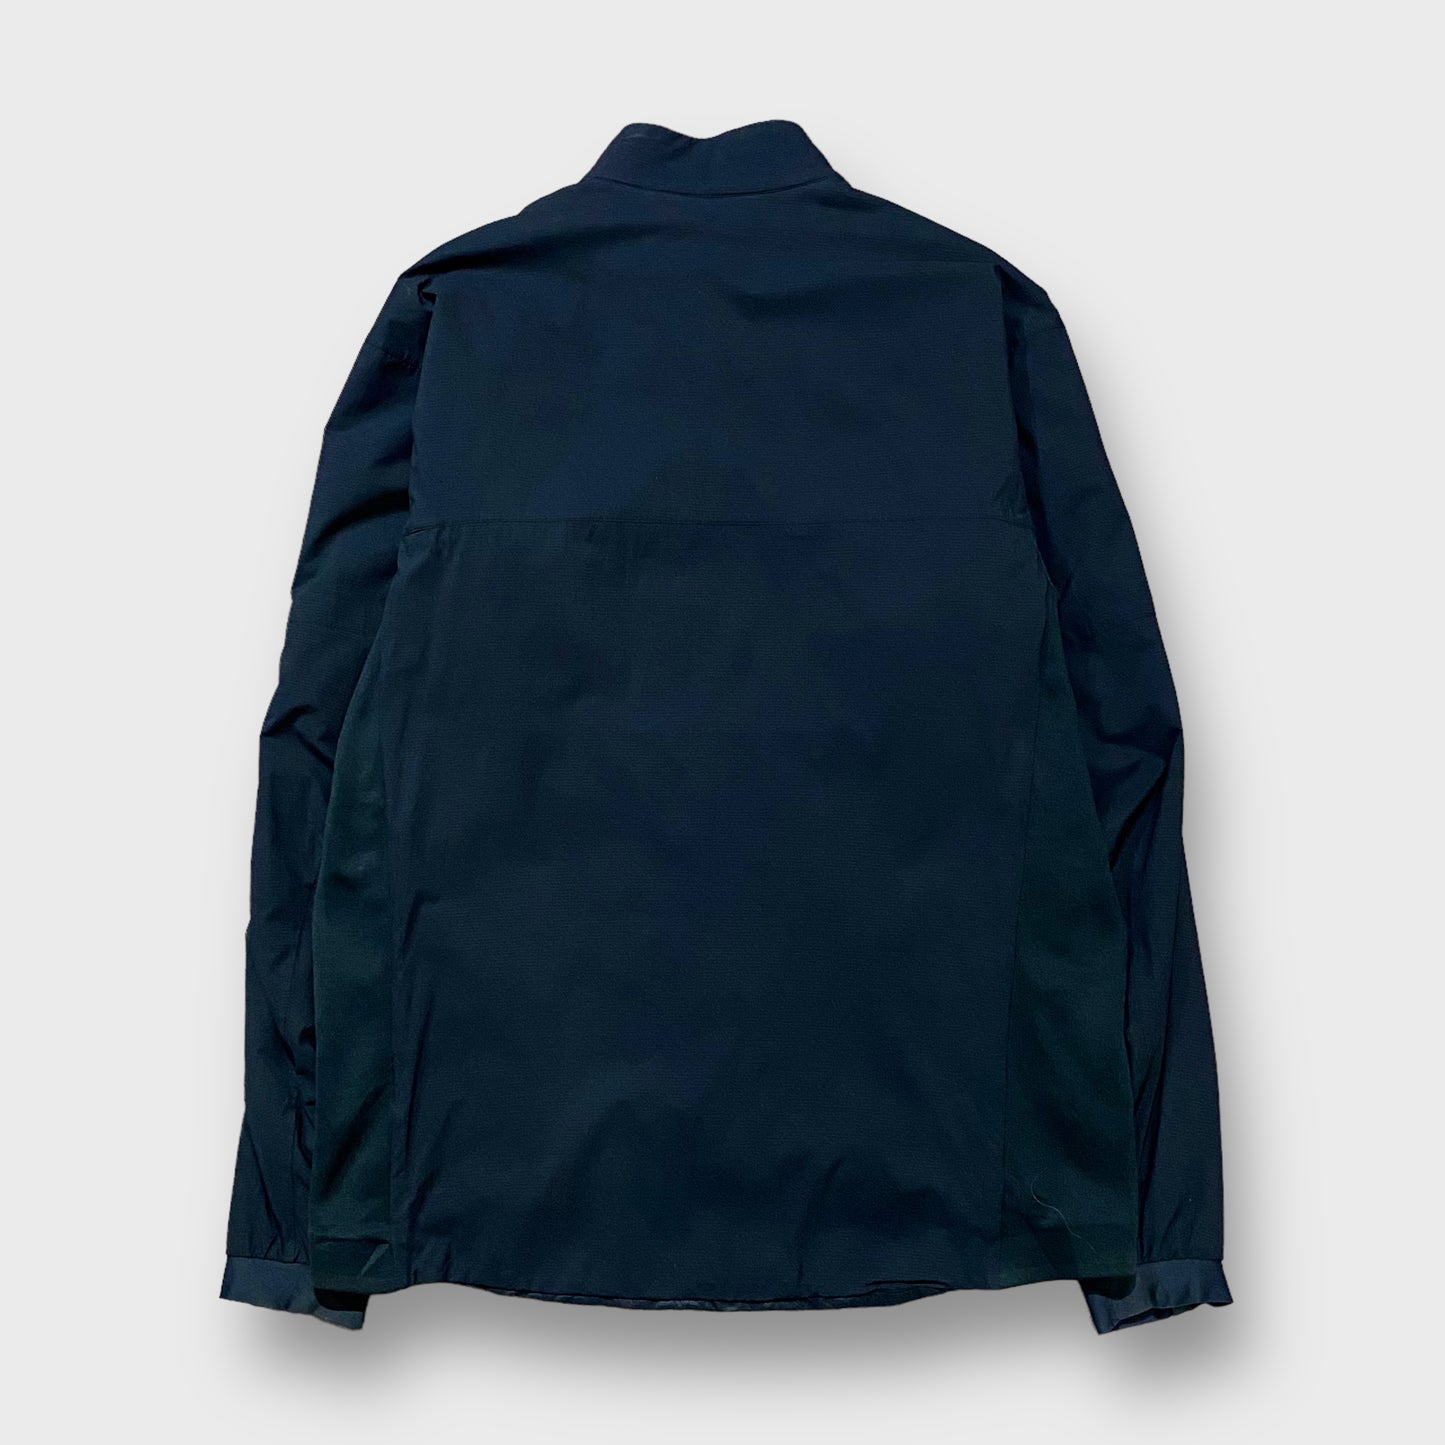 00's "Arc'teryx" Atom jacket